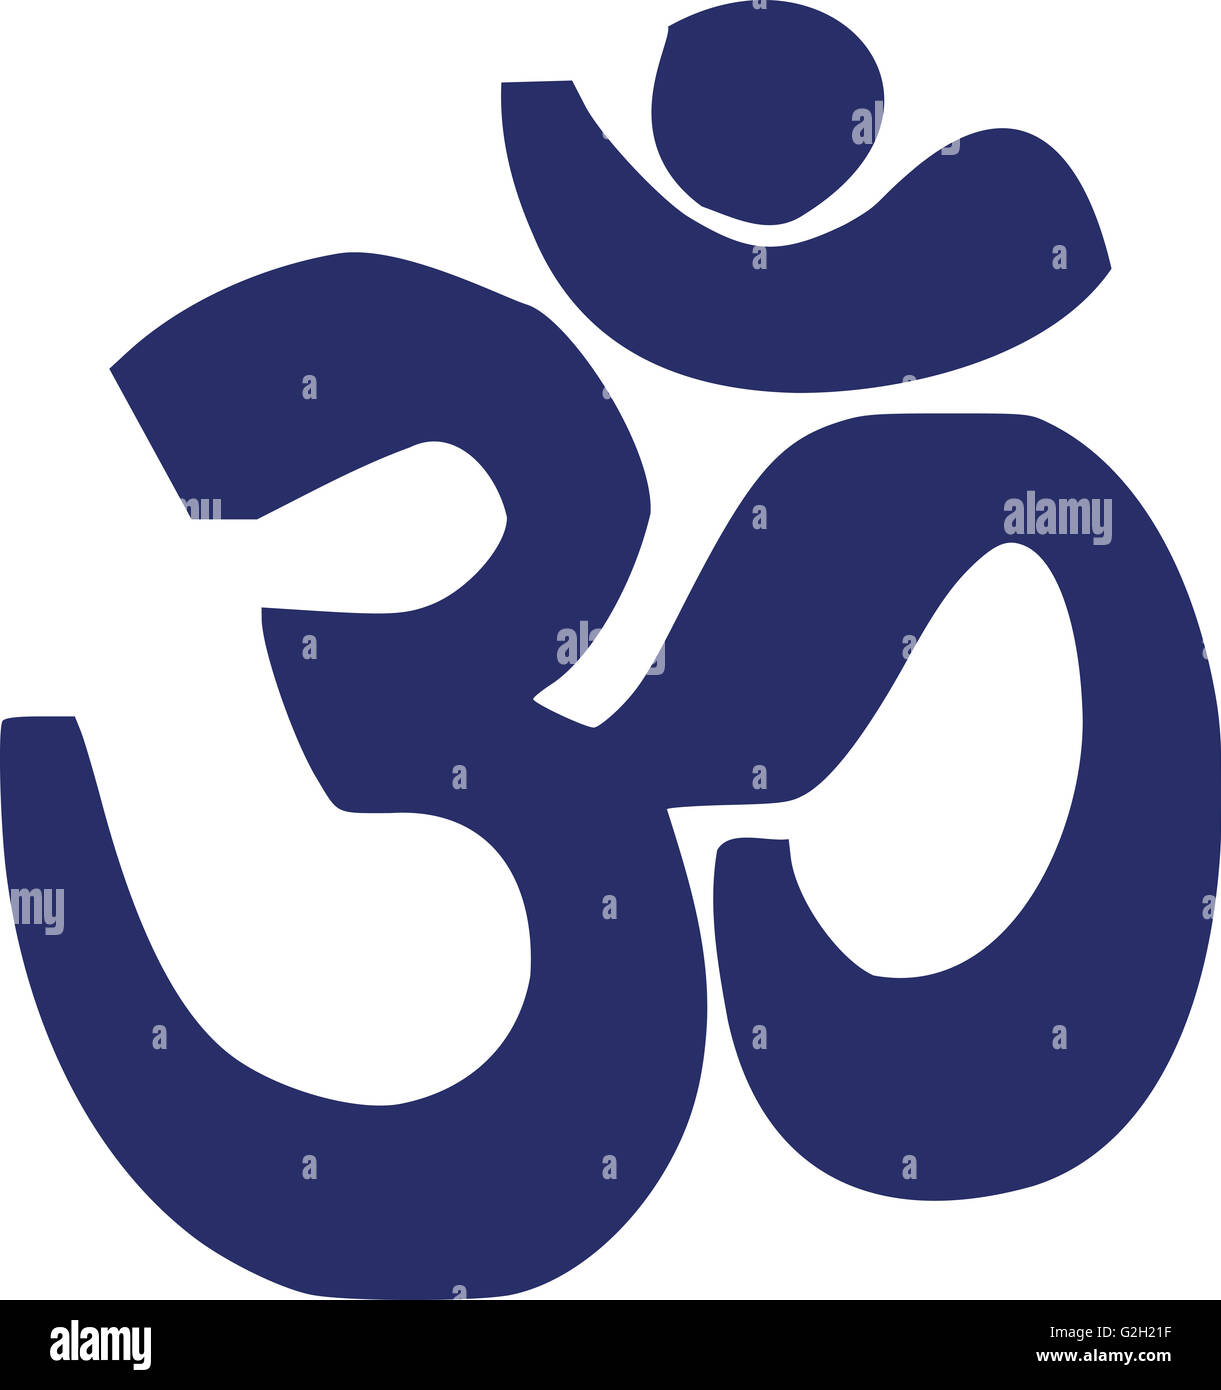 OM Sanskrit symbol Stockfoto